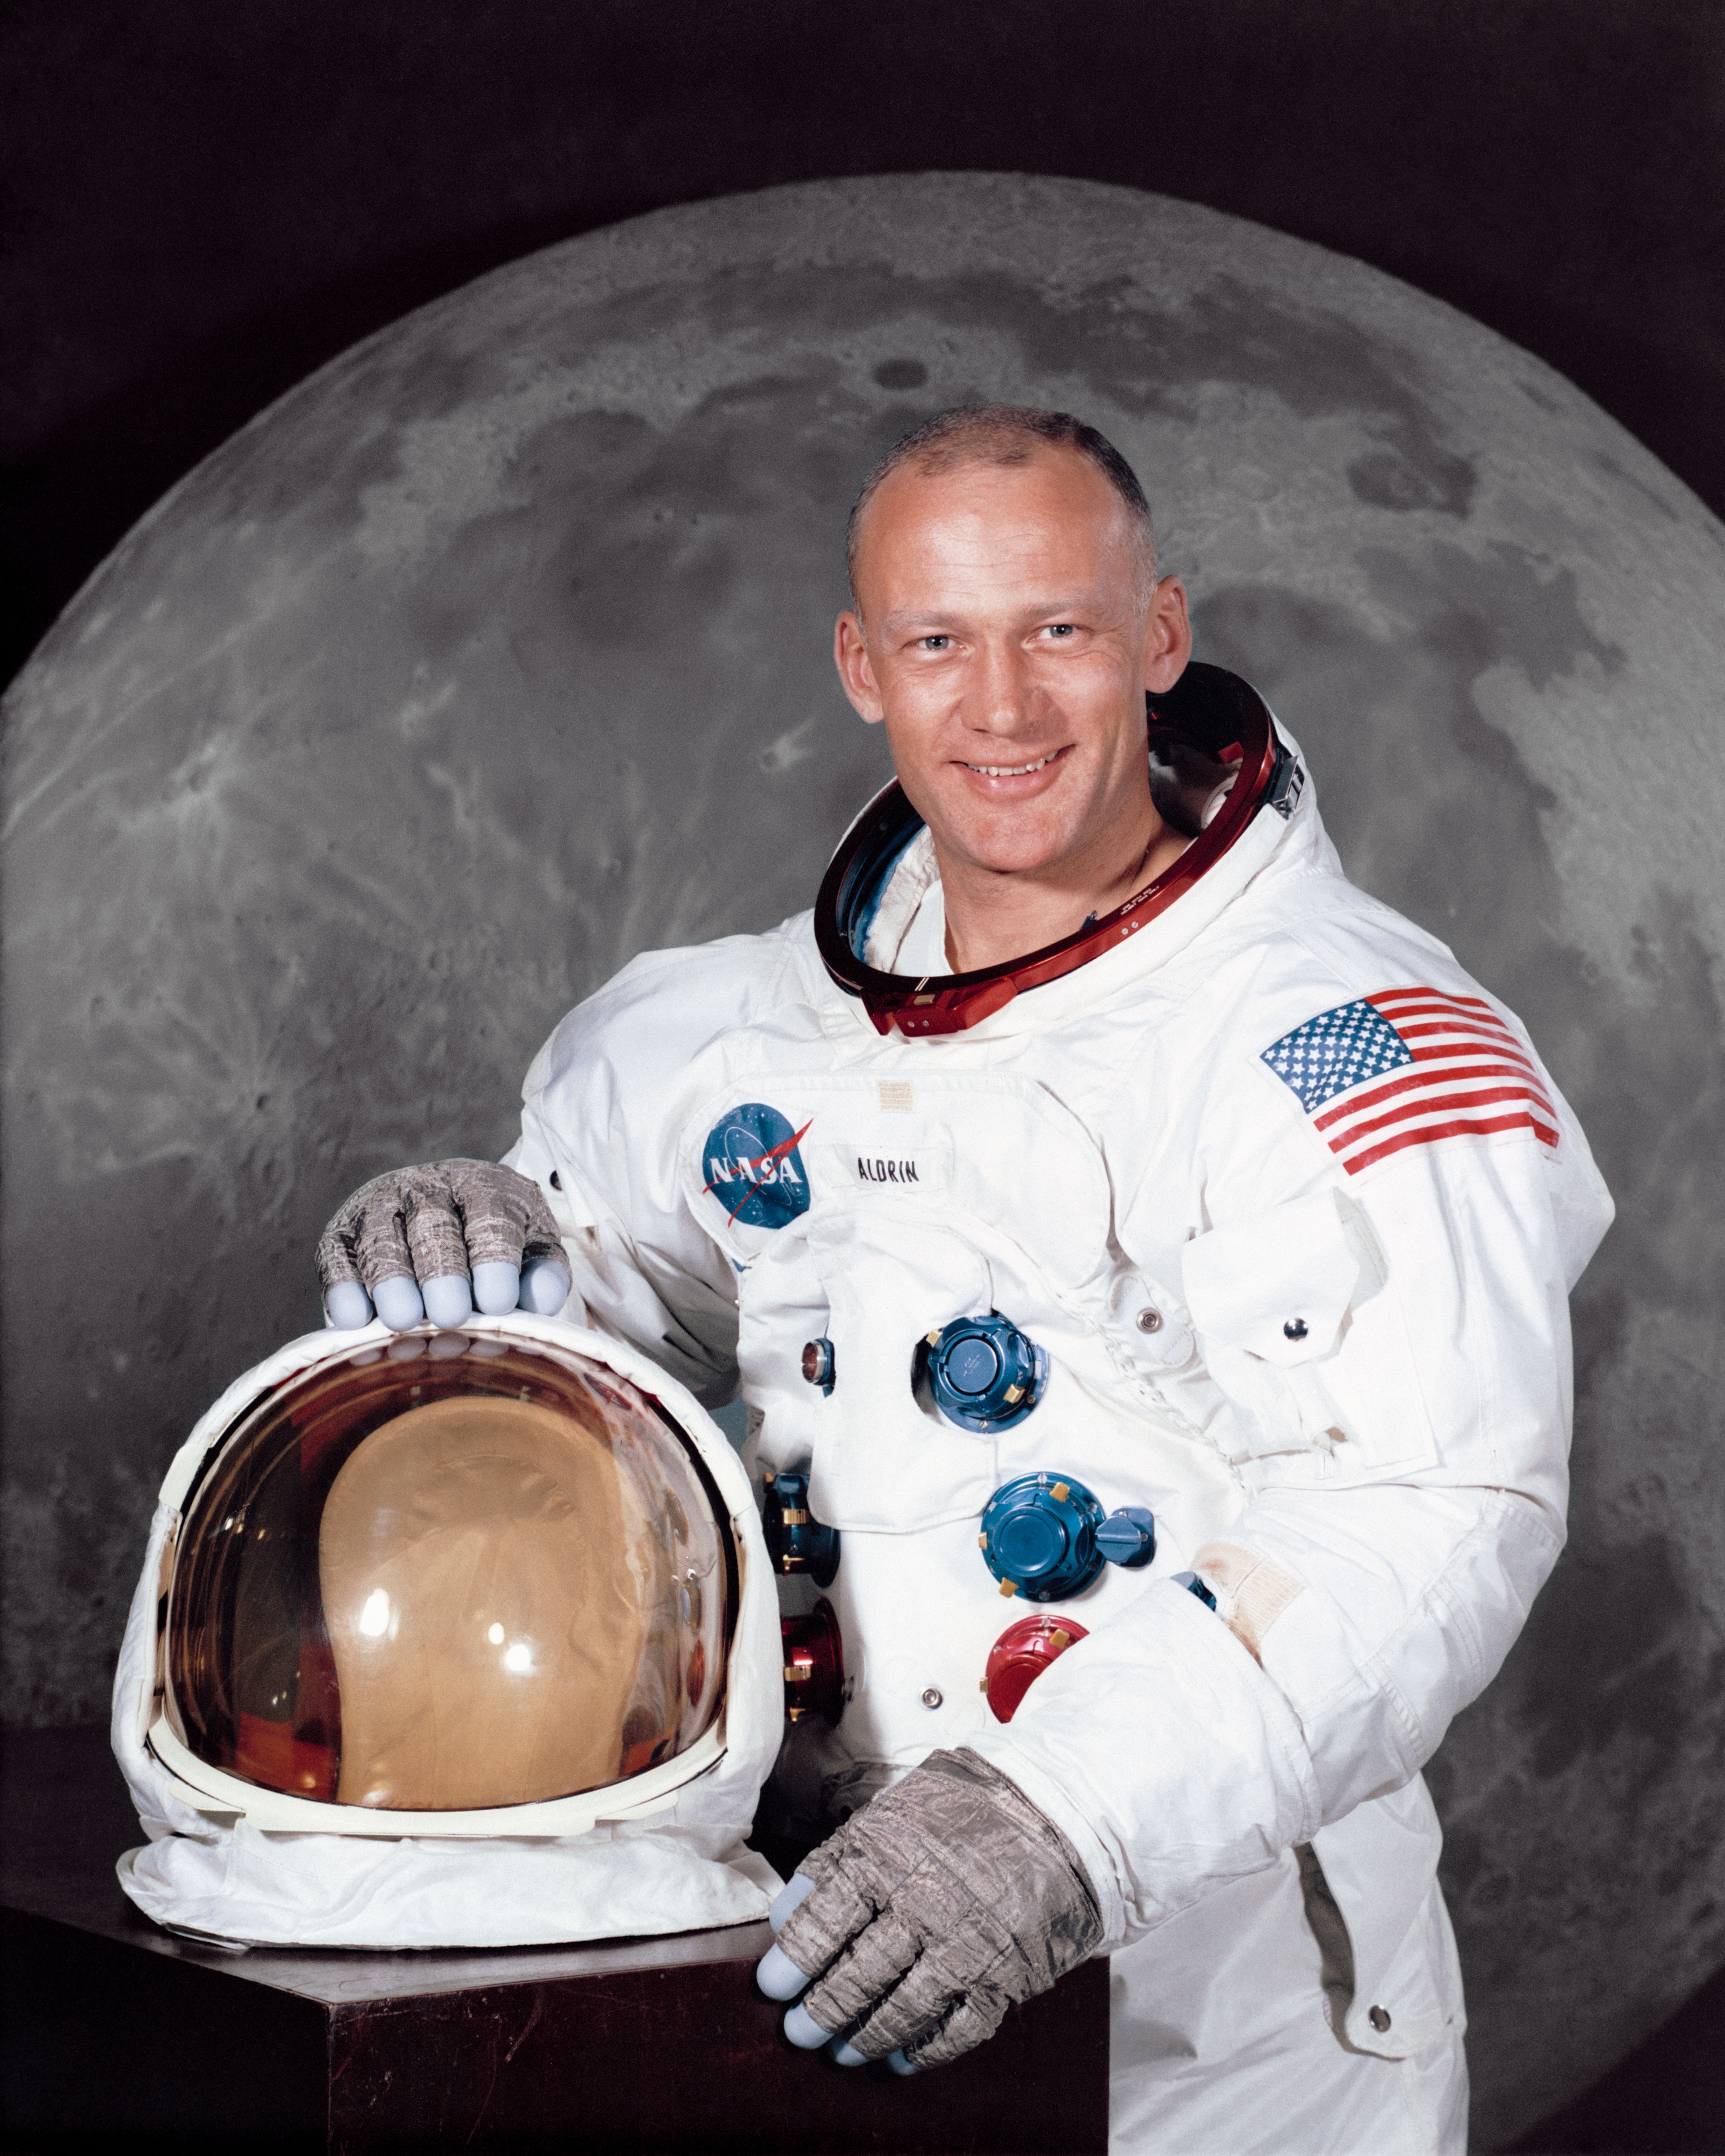 auteur Buzz Aldrin de la citation Revenir à la lune n'est pas visionnaire dans la restauration du leadership spatial pour l'Amérique. Comme son prédécesseur Apollo, il s'avérera être une impasse jonchée de vaisseau spatial cassé, de rêves brisés et de politiques brisées.